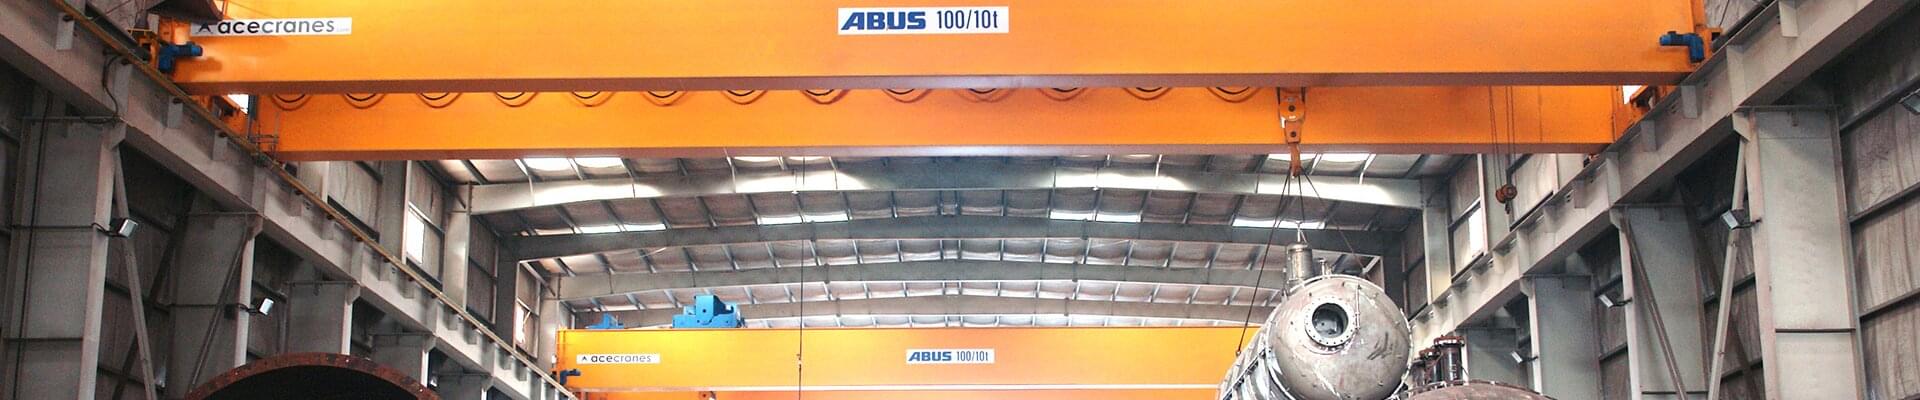 ABUS Zweiträgerlaufkran mit Tragfähigkeit von 100 t in einer Fertigung der Firma DESCON Engineering HFZC in den Vereinigten Arabischen Emiraten 